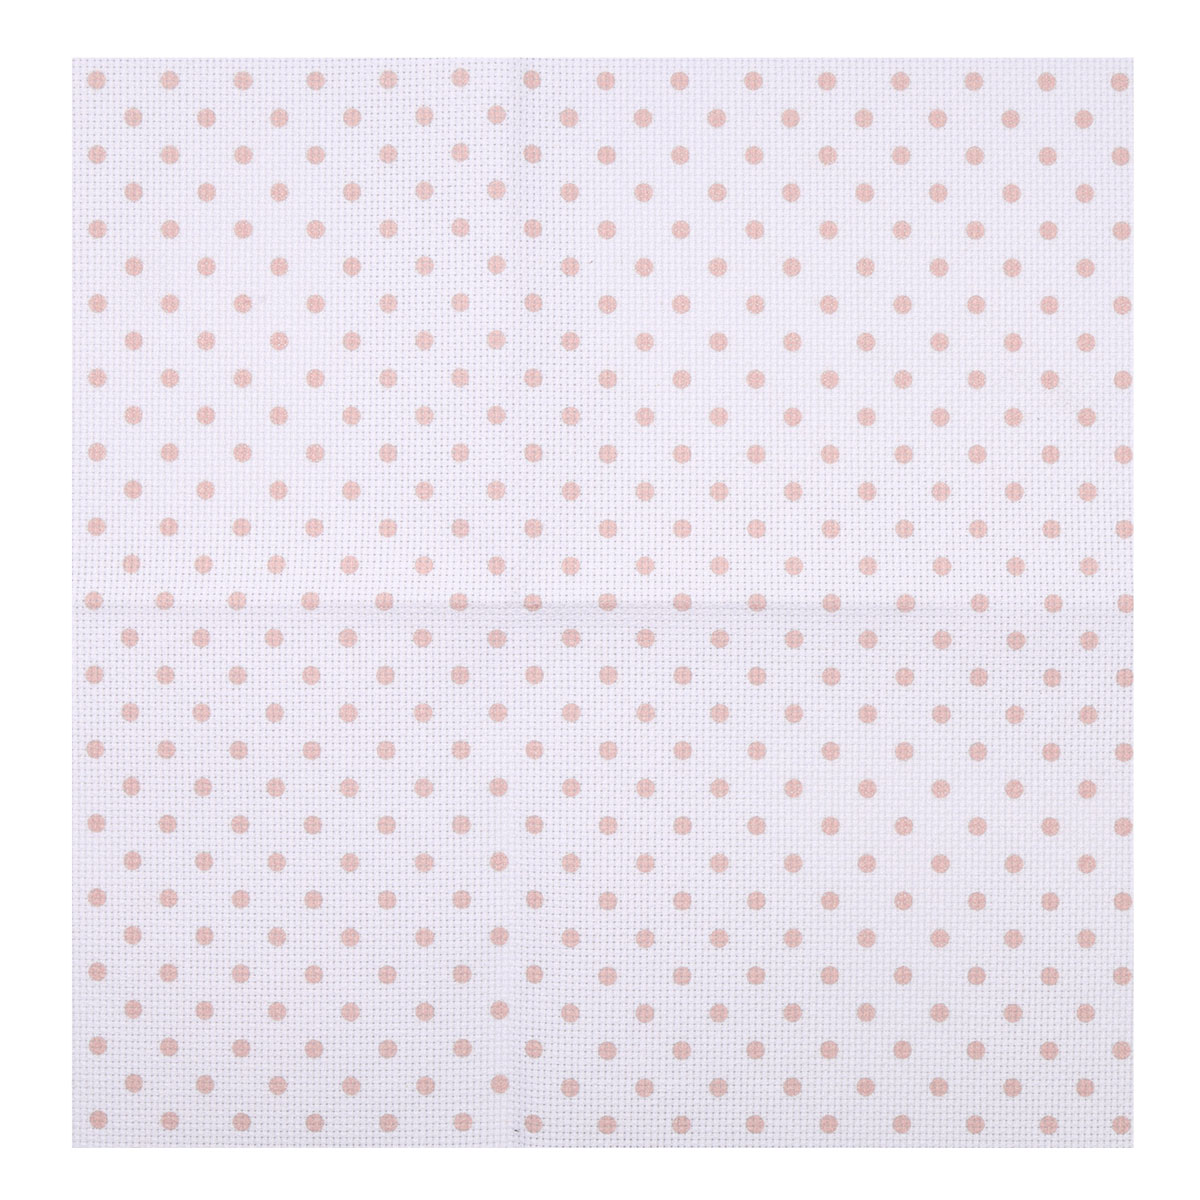 Канва Bestex для вышивания шитья и рукоделия дизайнерская 30*30 см Розовый горошек - фото 2